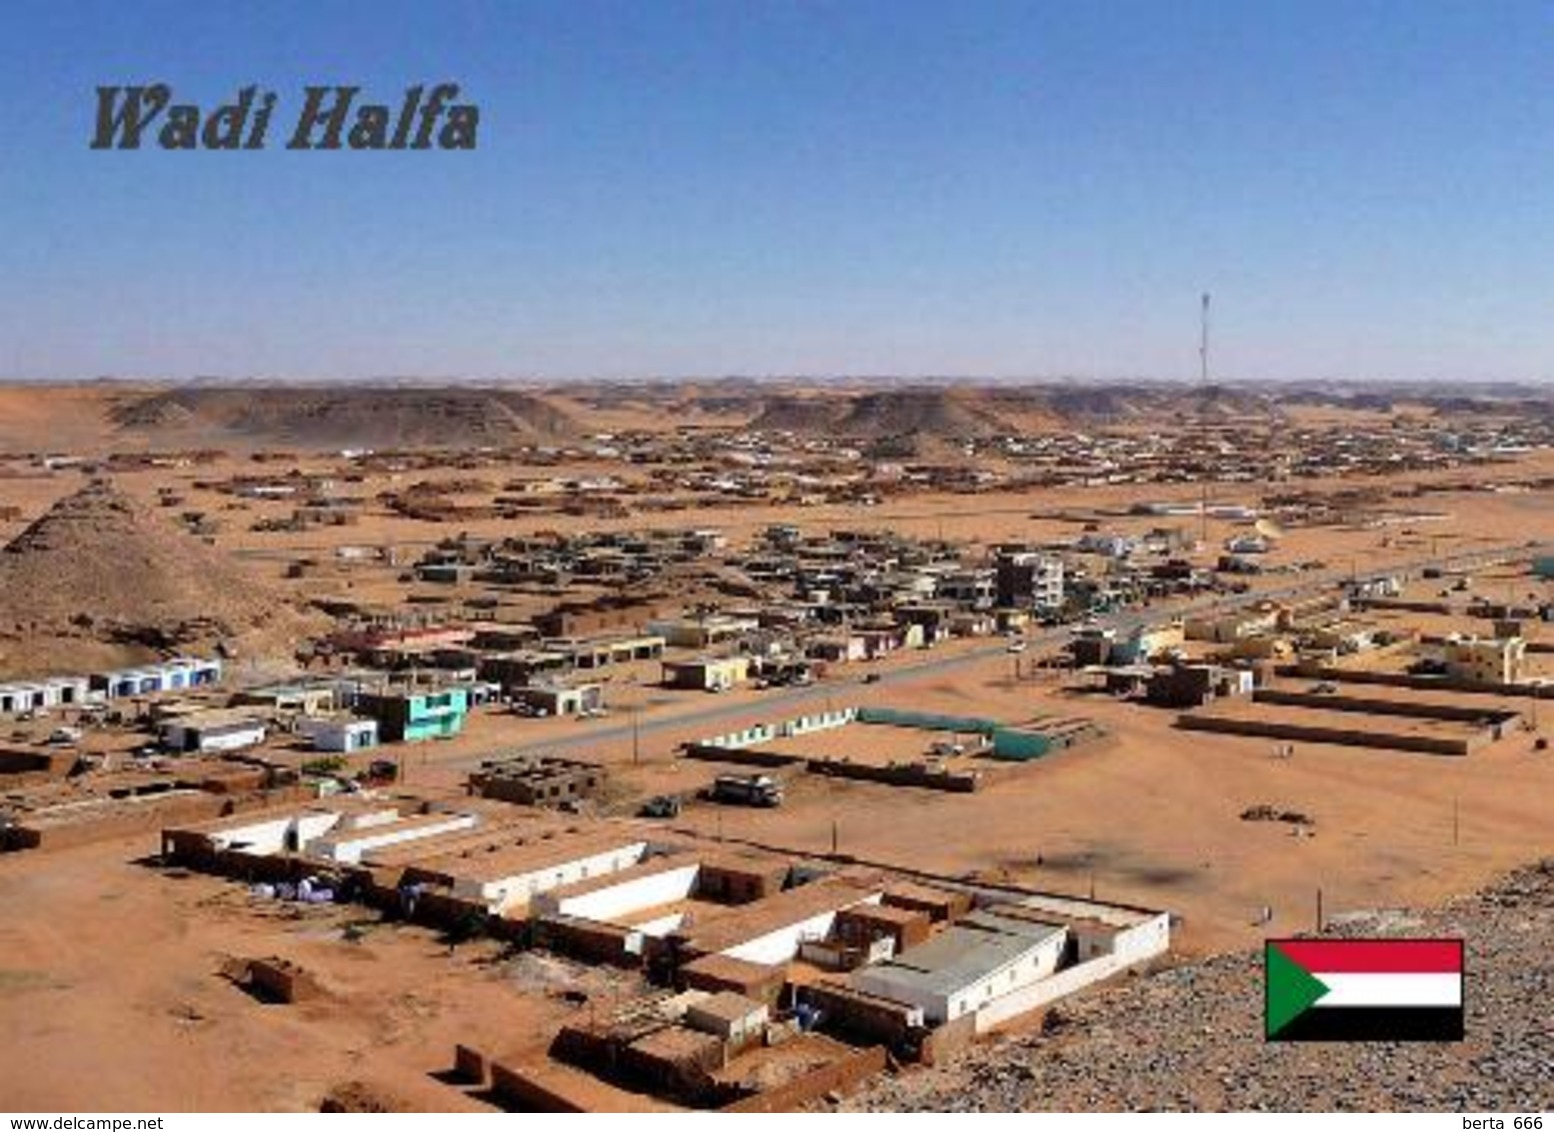 Sudan Wadi Halfa Aerial View New Postcard - Sudan